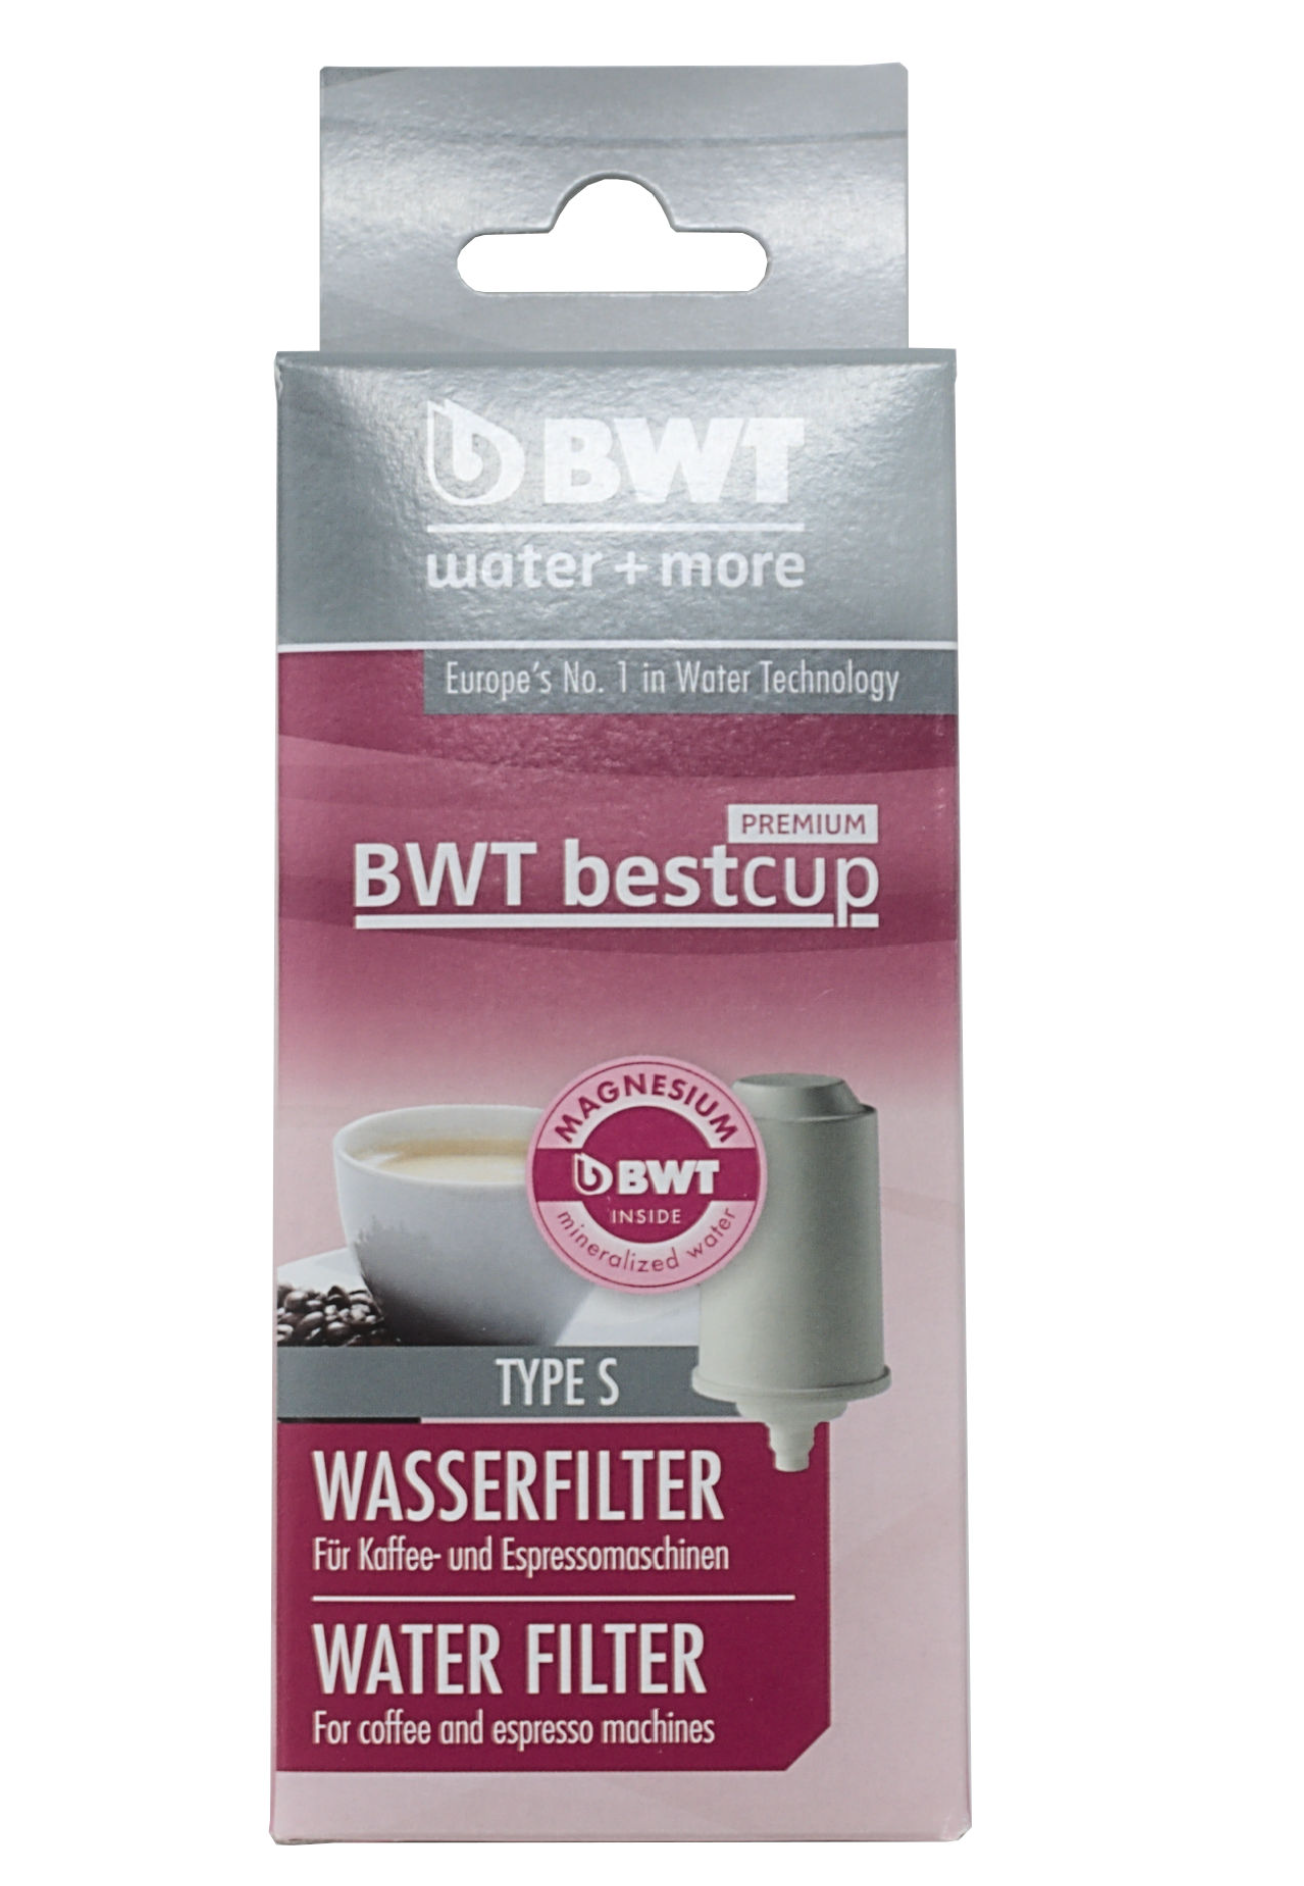 BWT Bestcup Premium Wasserfilter